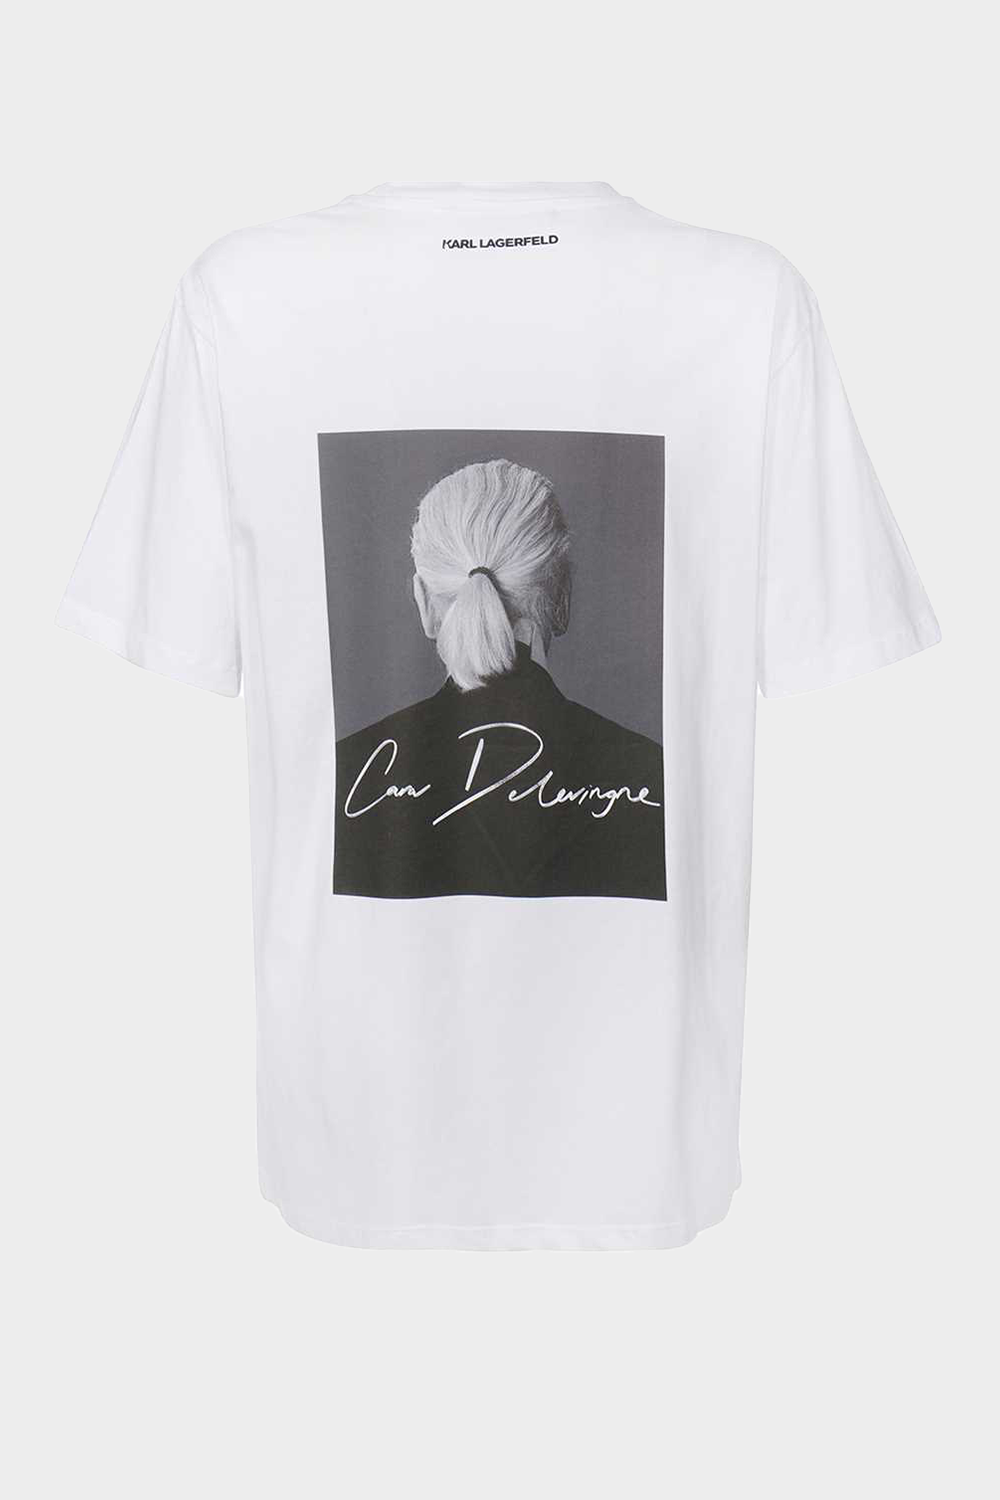 חולצת טי שירט לנשים בצבע לבן KARL LAGERFELD Vendome online | ונדום .